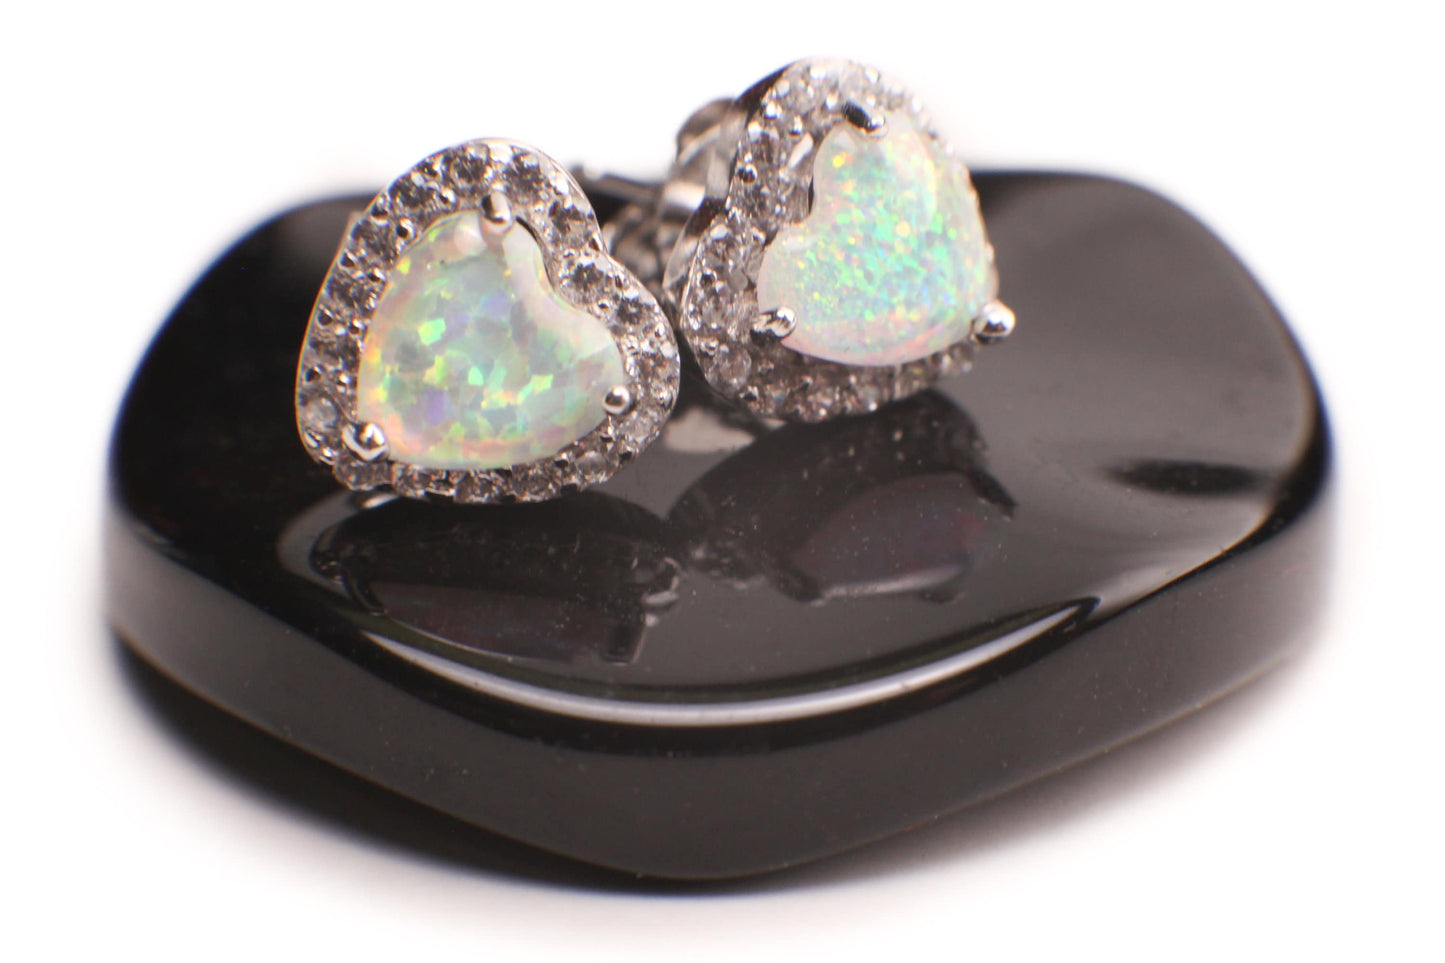 Ethiopian Fire Opal, Welo Opal, 8.5mm Heart Shape Stud Earrings in 925 Sterling Silver AAA Fiery Opal Elegant Dainty Earring valentines gift